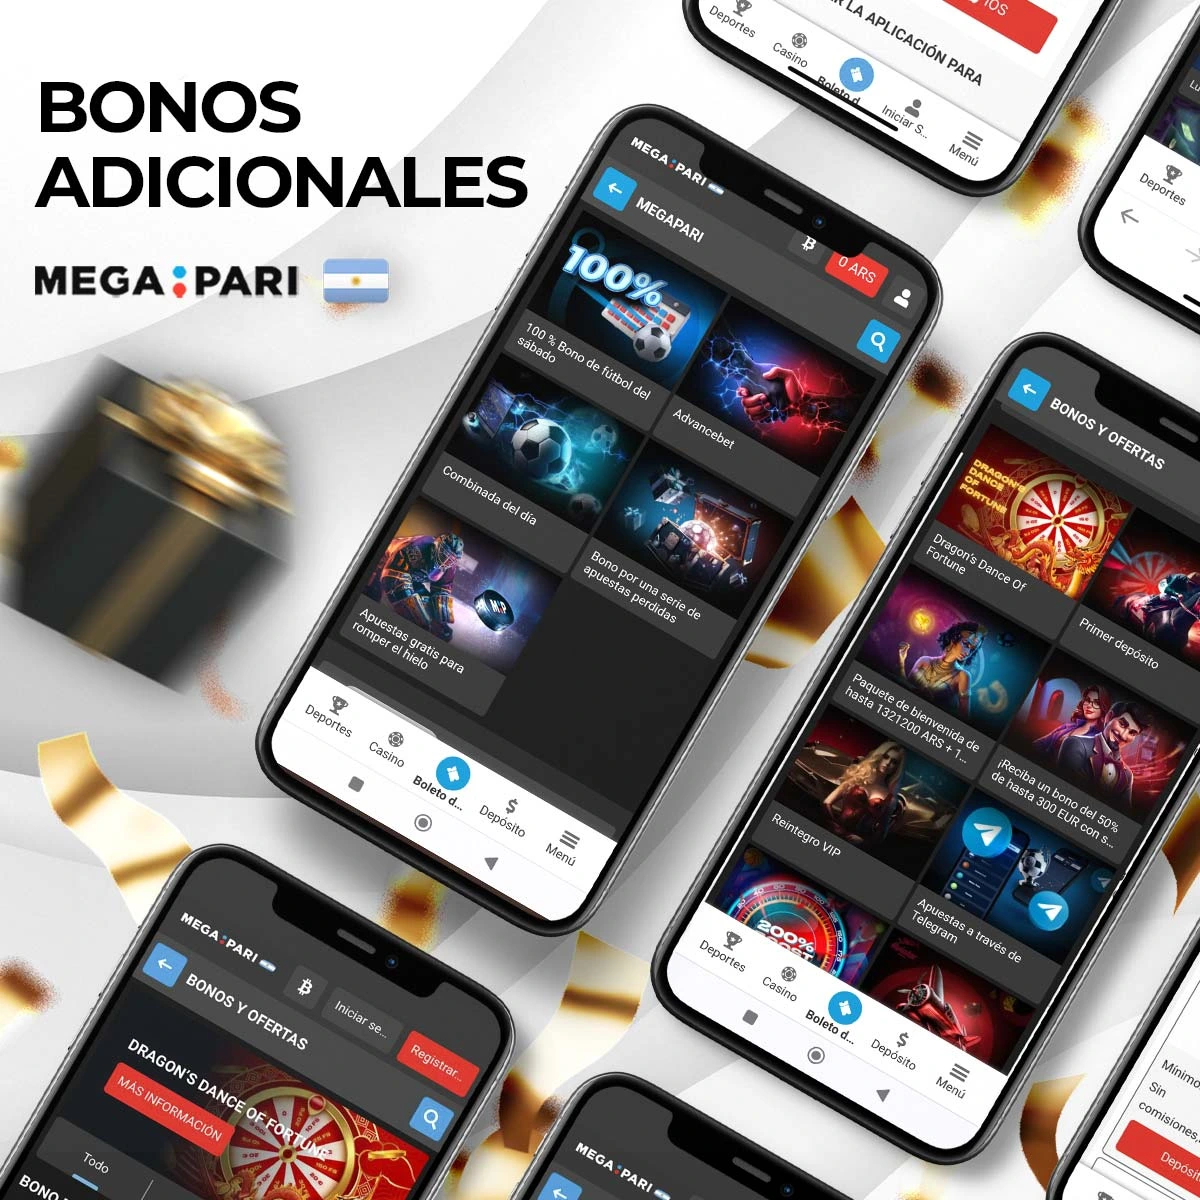 Bonos y promociones adicionales en Megapari Argentina